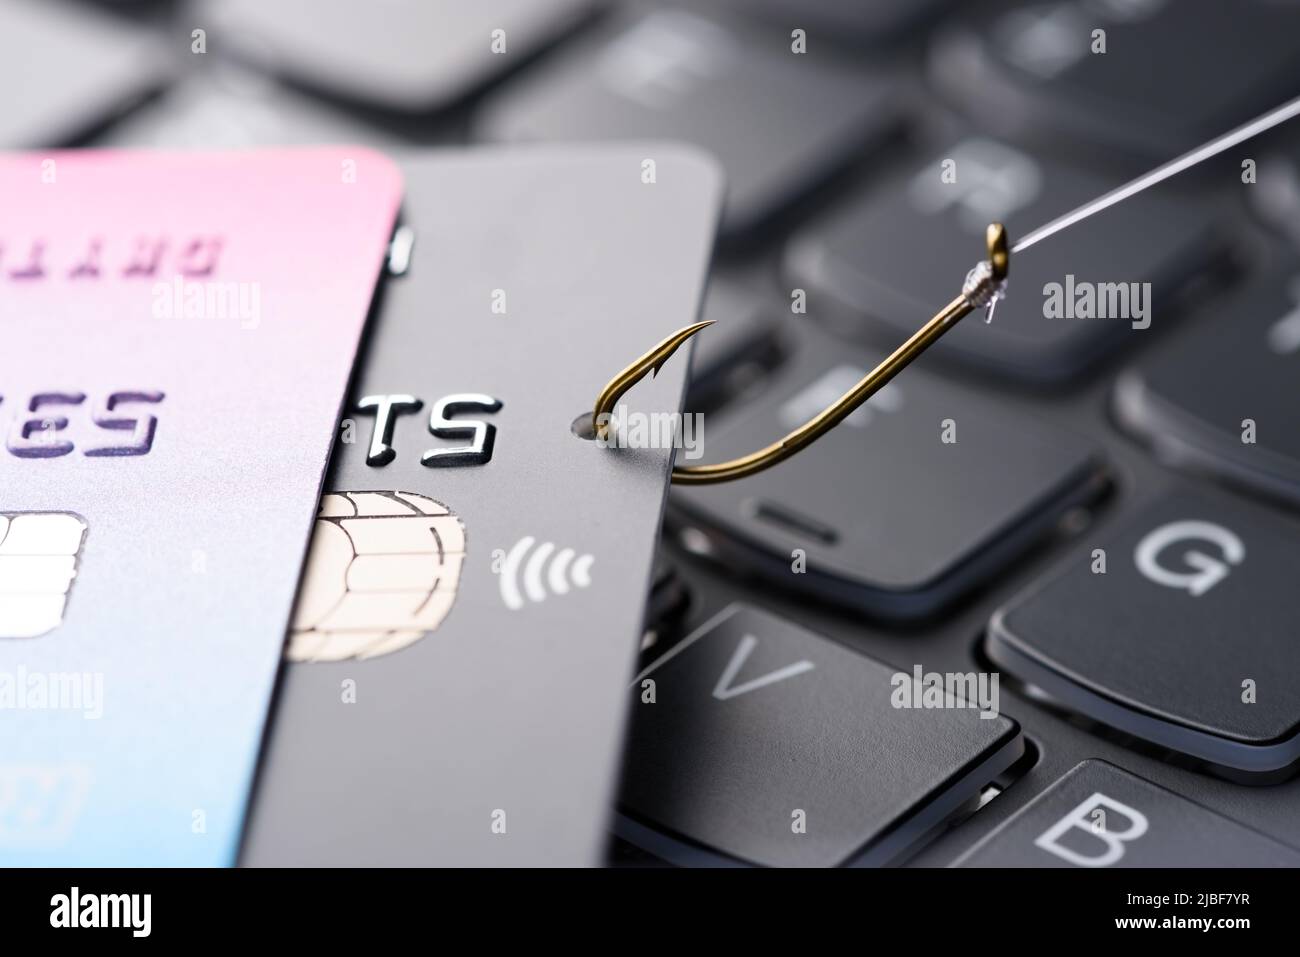 Kreditkarte auf Angelhaken aus dem Stapel auf der Tastatur gezogen, Phishing-Betrug Datendiebstahl Konzept Stockfoto